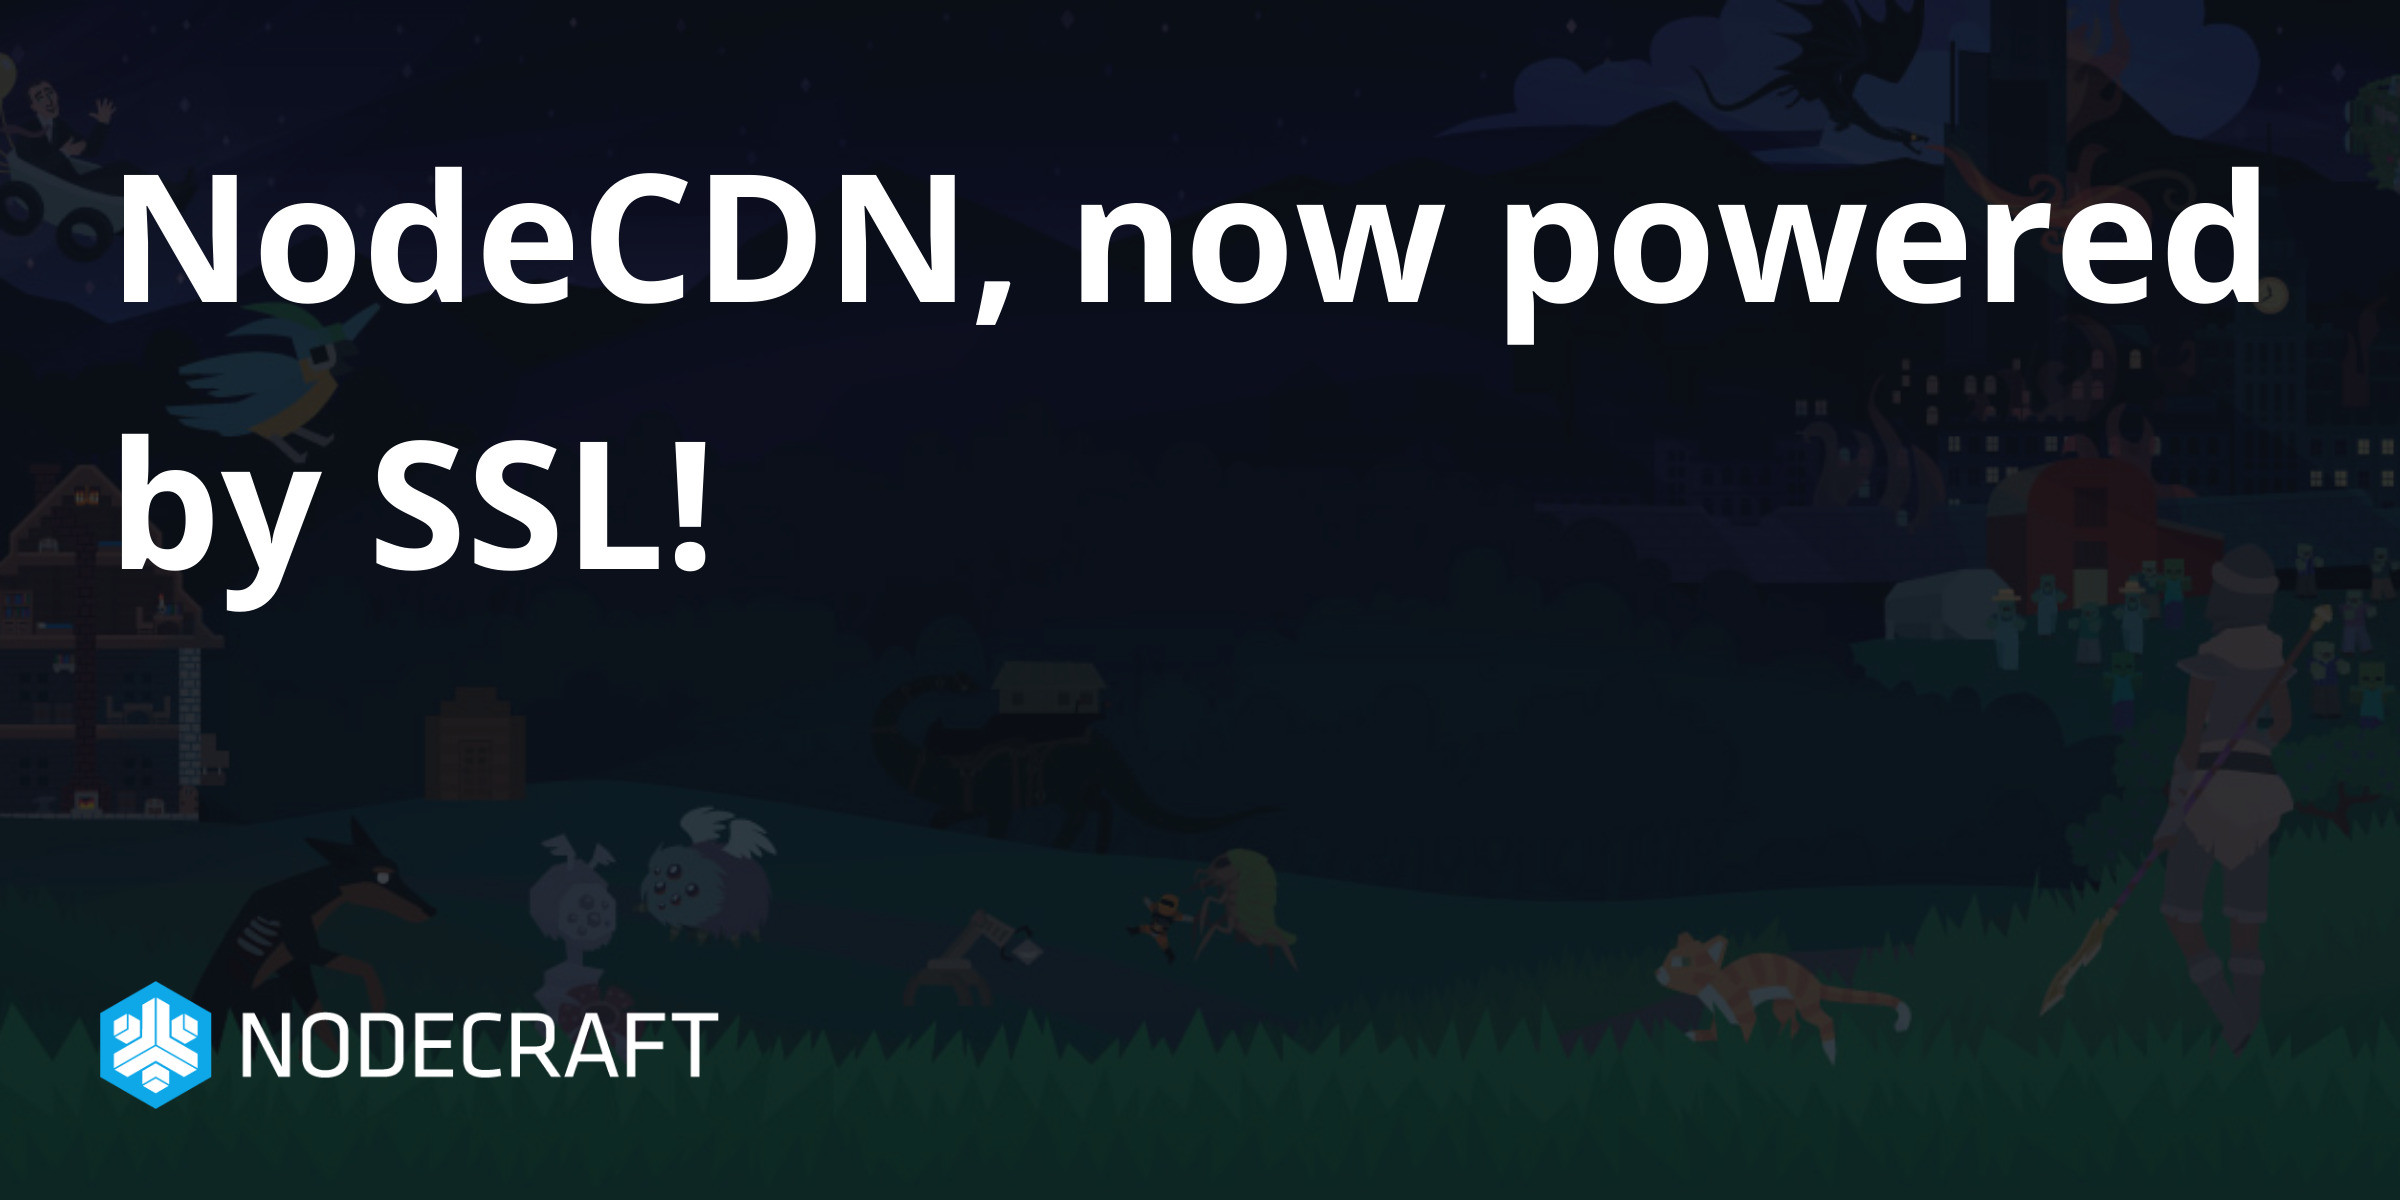 NodeCDN, now powered by SSL!